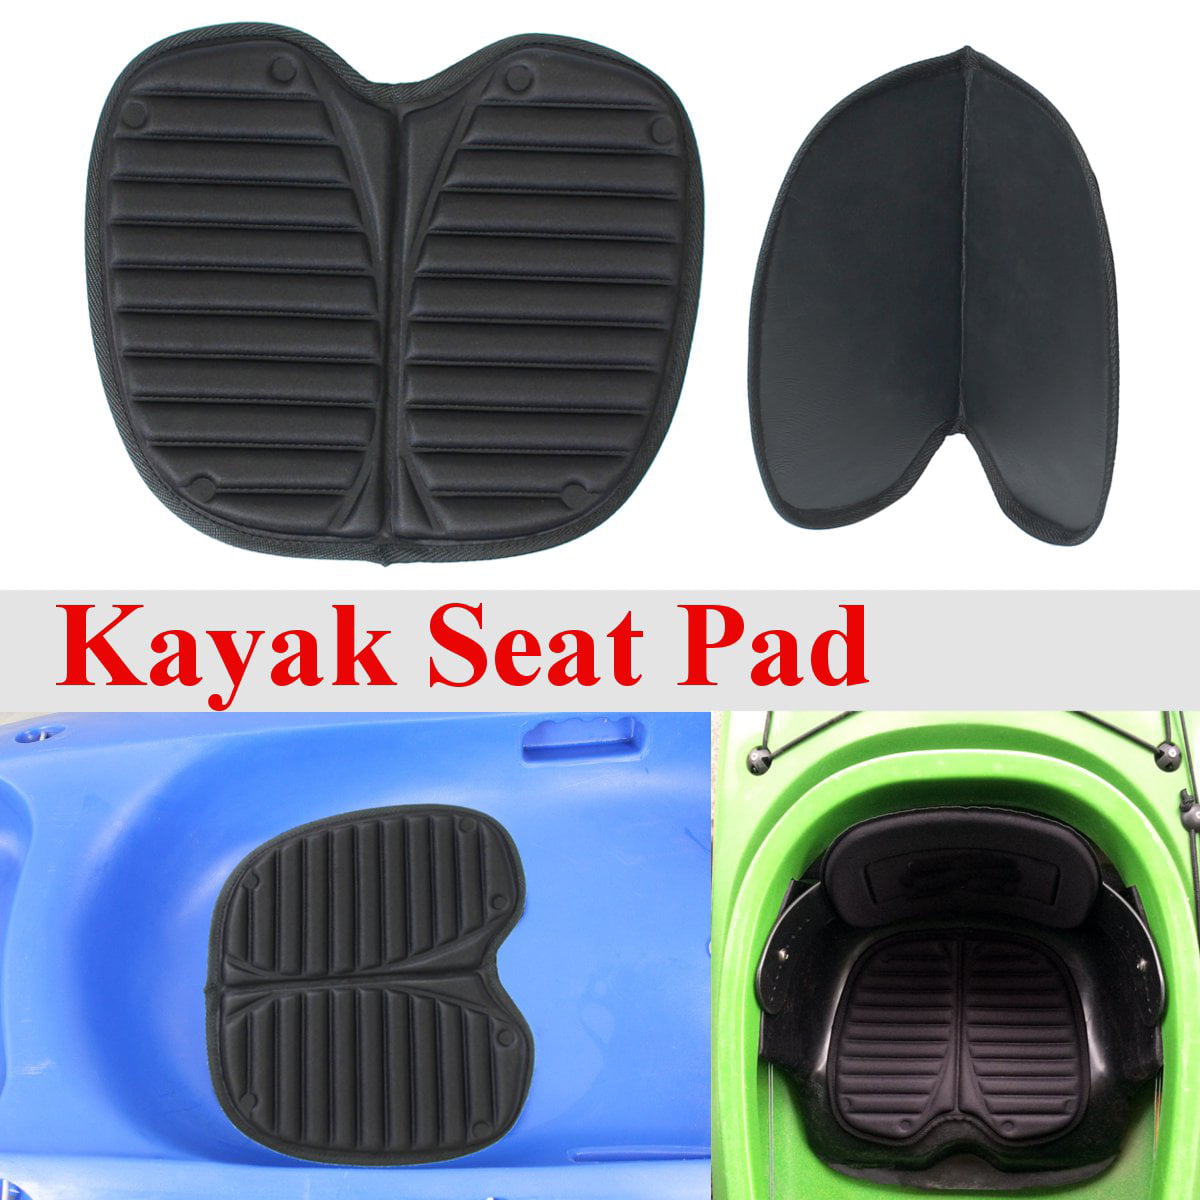 Details about   Kayak Back Seat Cushion Seat Pad Lightweight Eva Paddling Sit-on Top Sof 